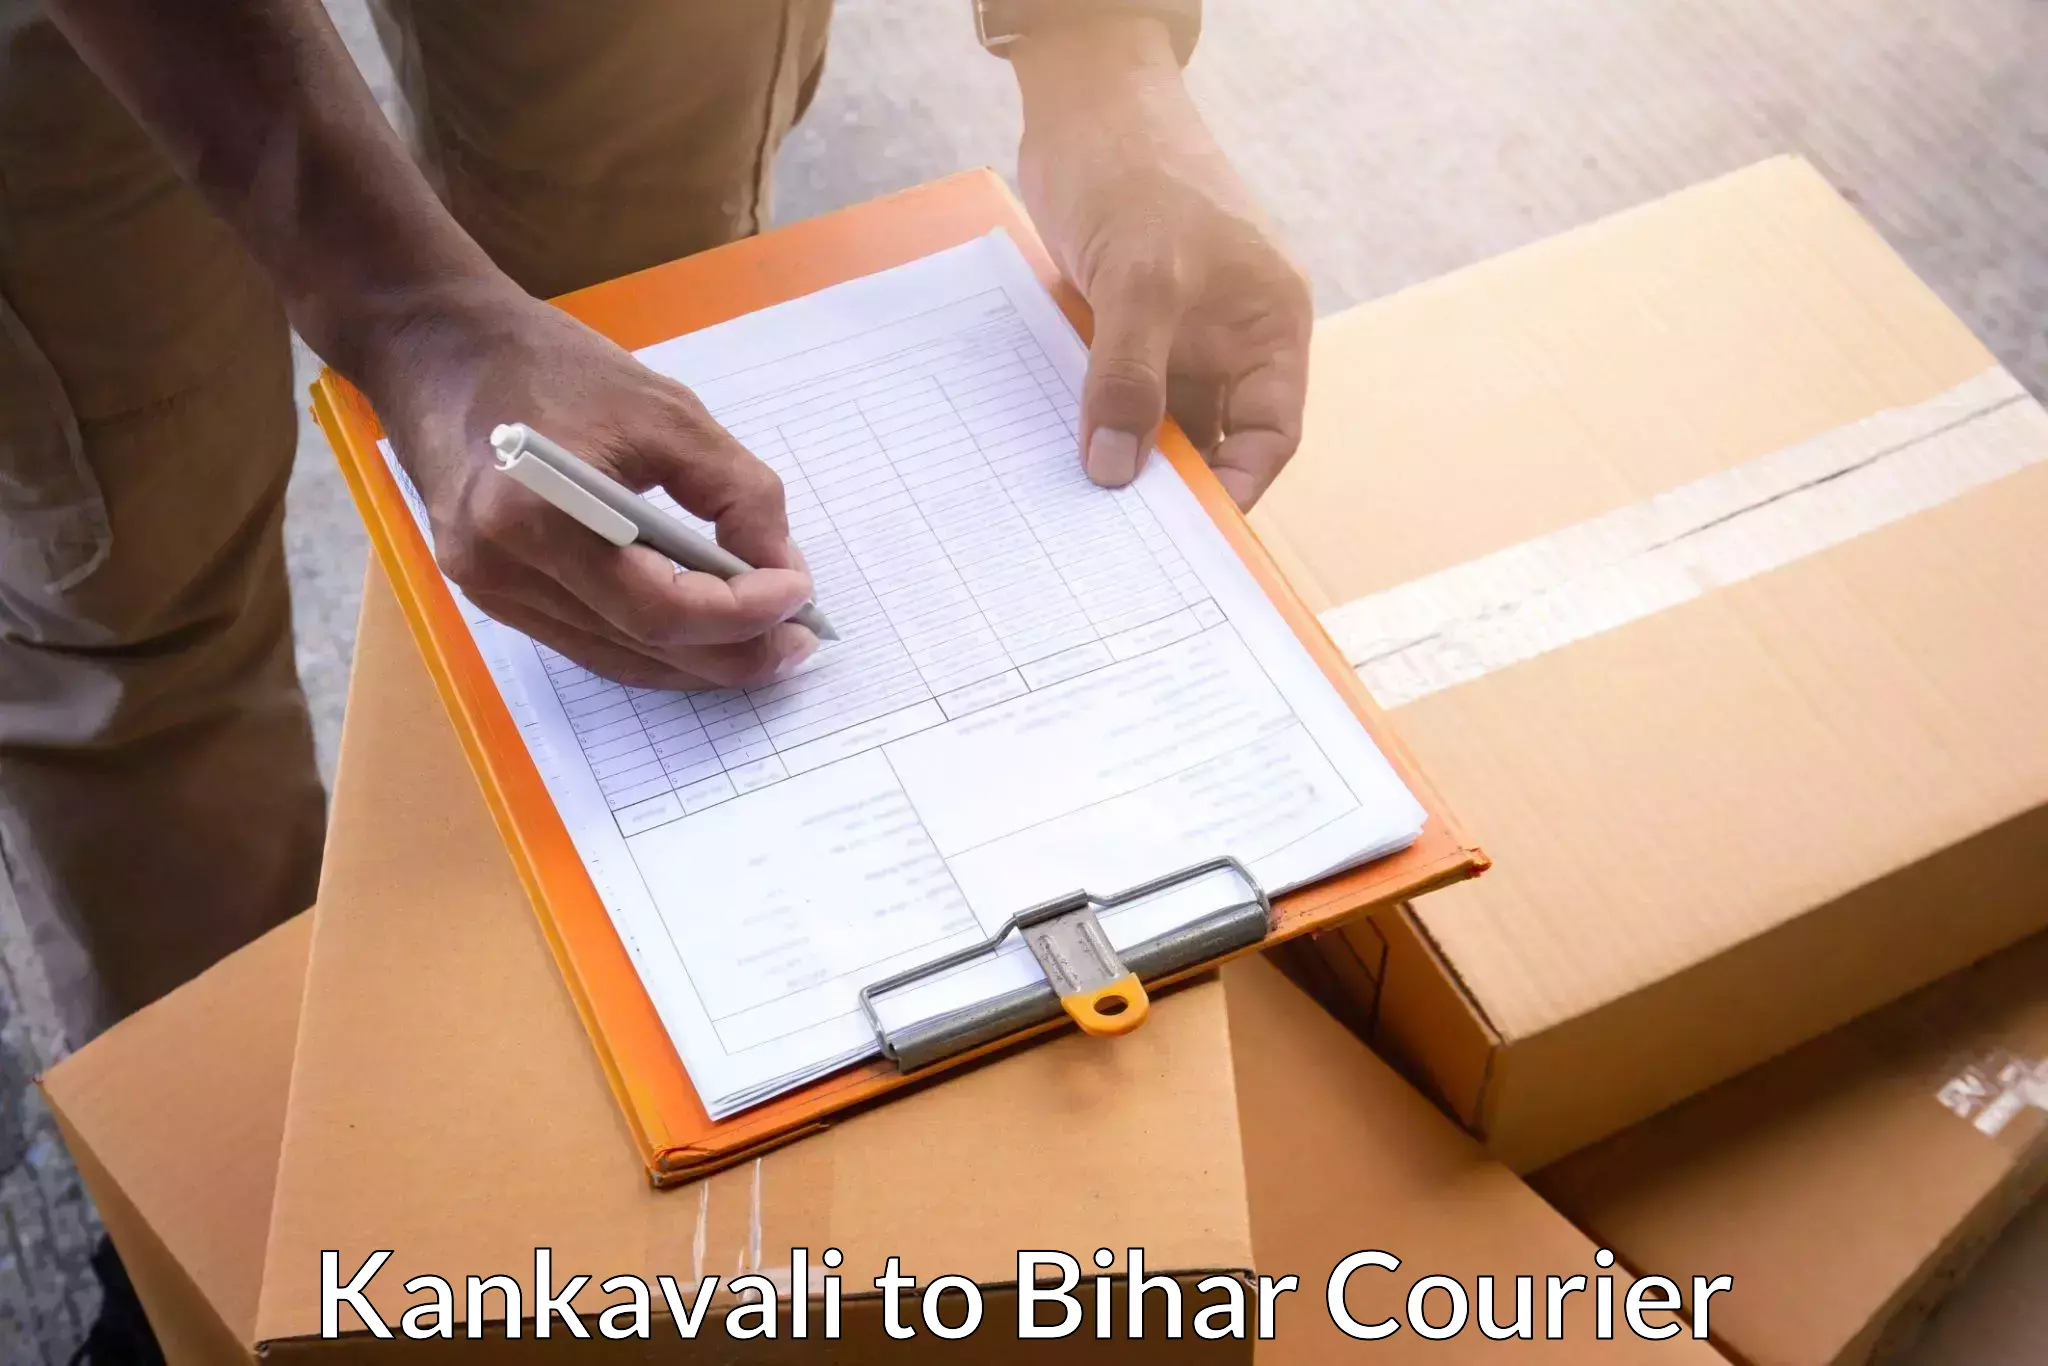 Speedy delivery service Kankavali to Dinara